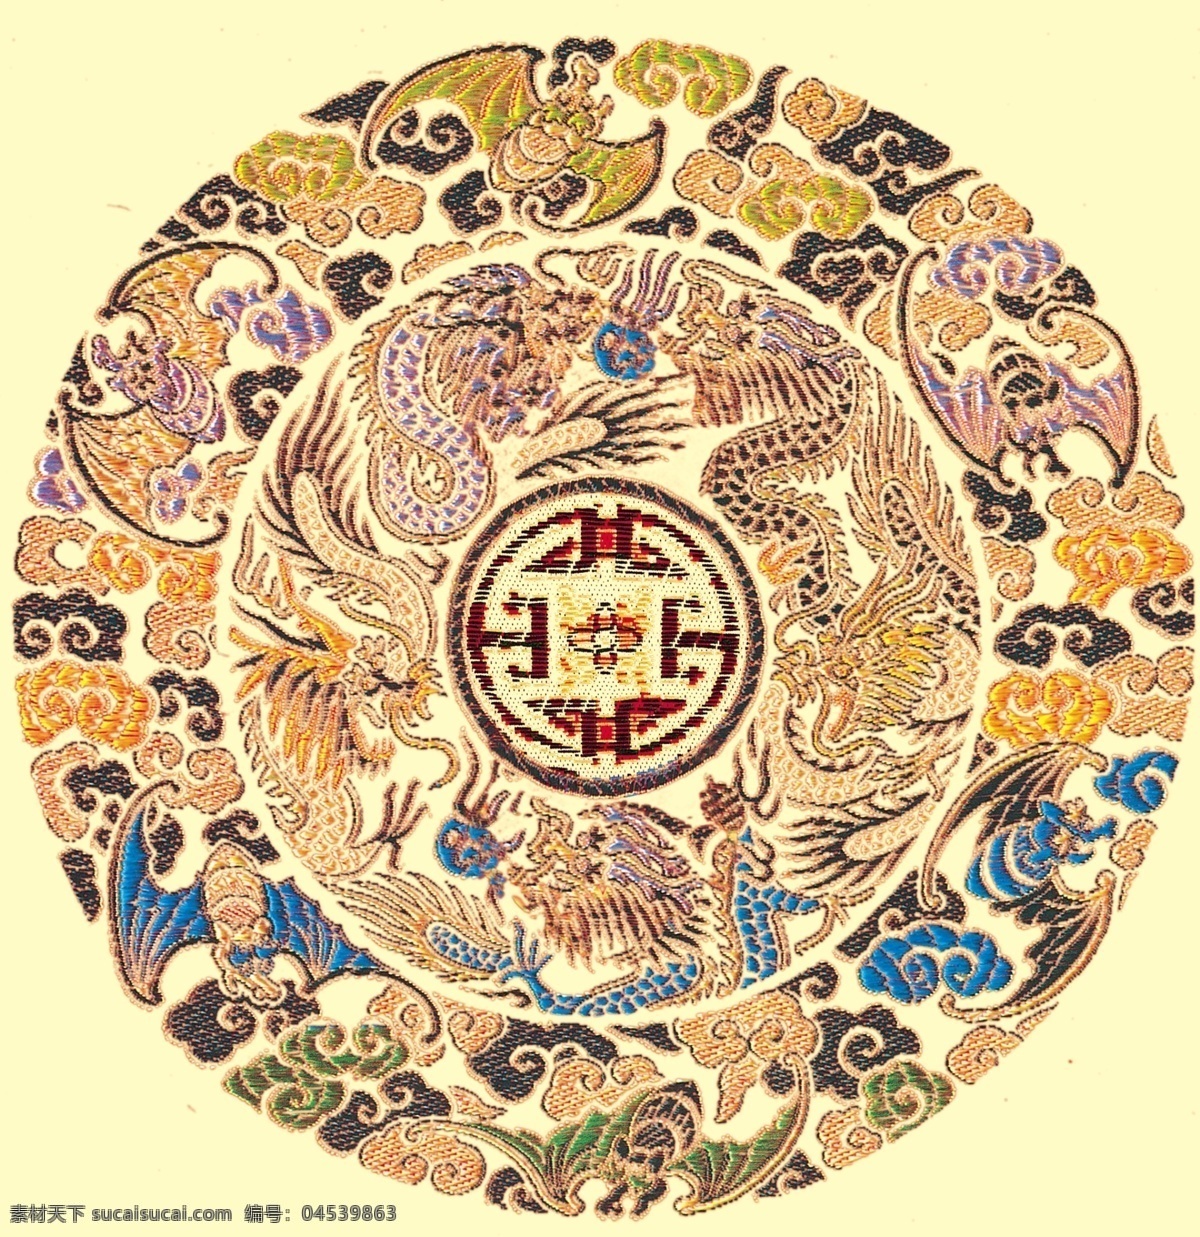 中国刺绣文化 刺绣文化 传统元素 分层 高清设计图 祥龙